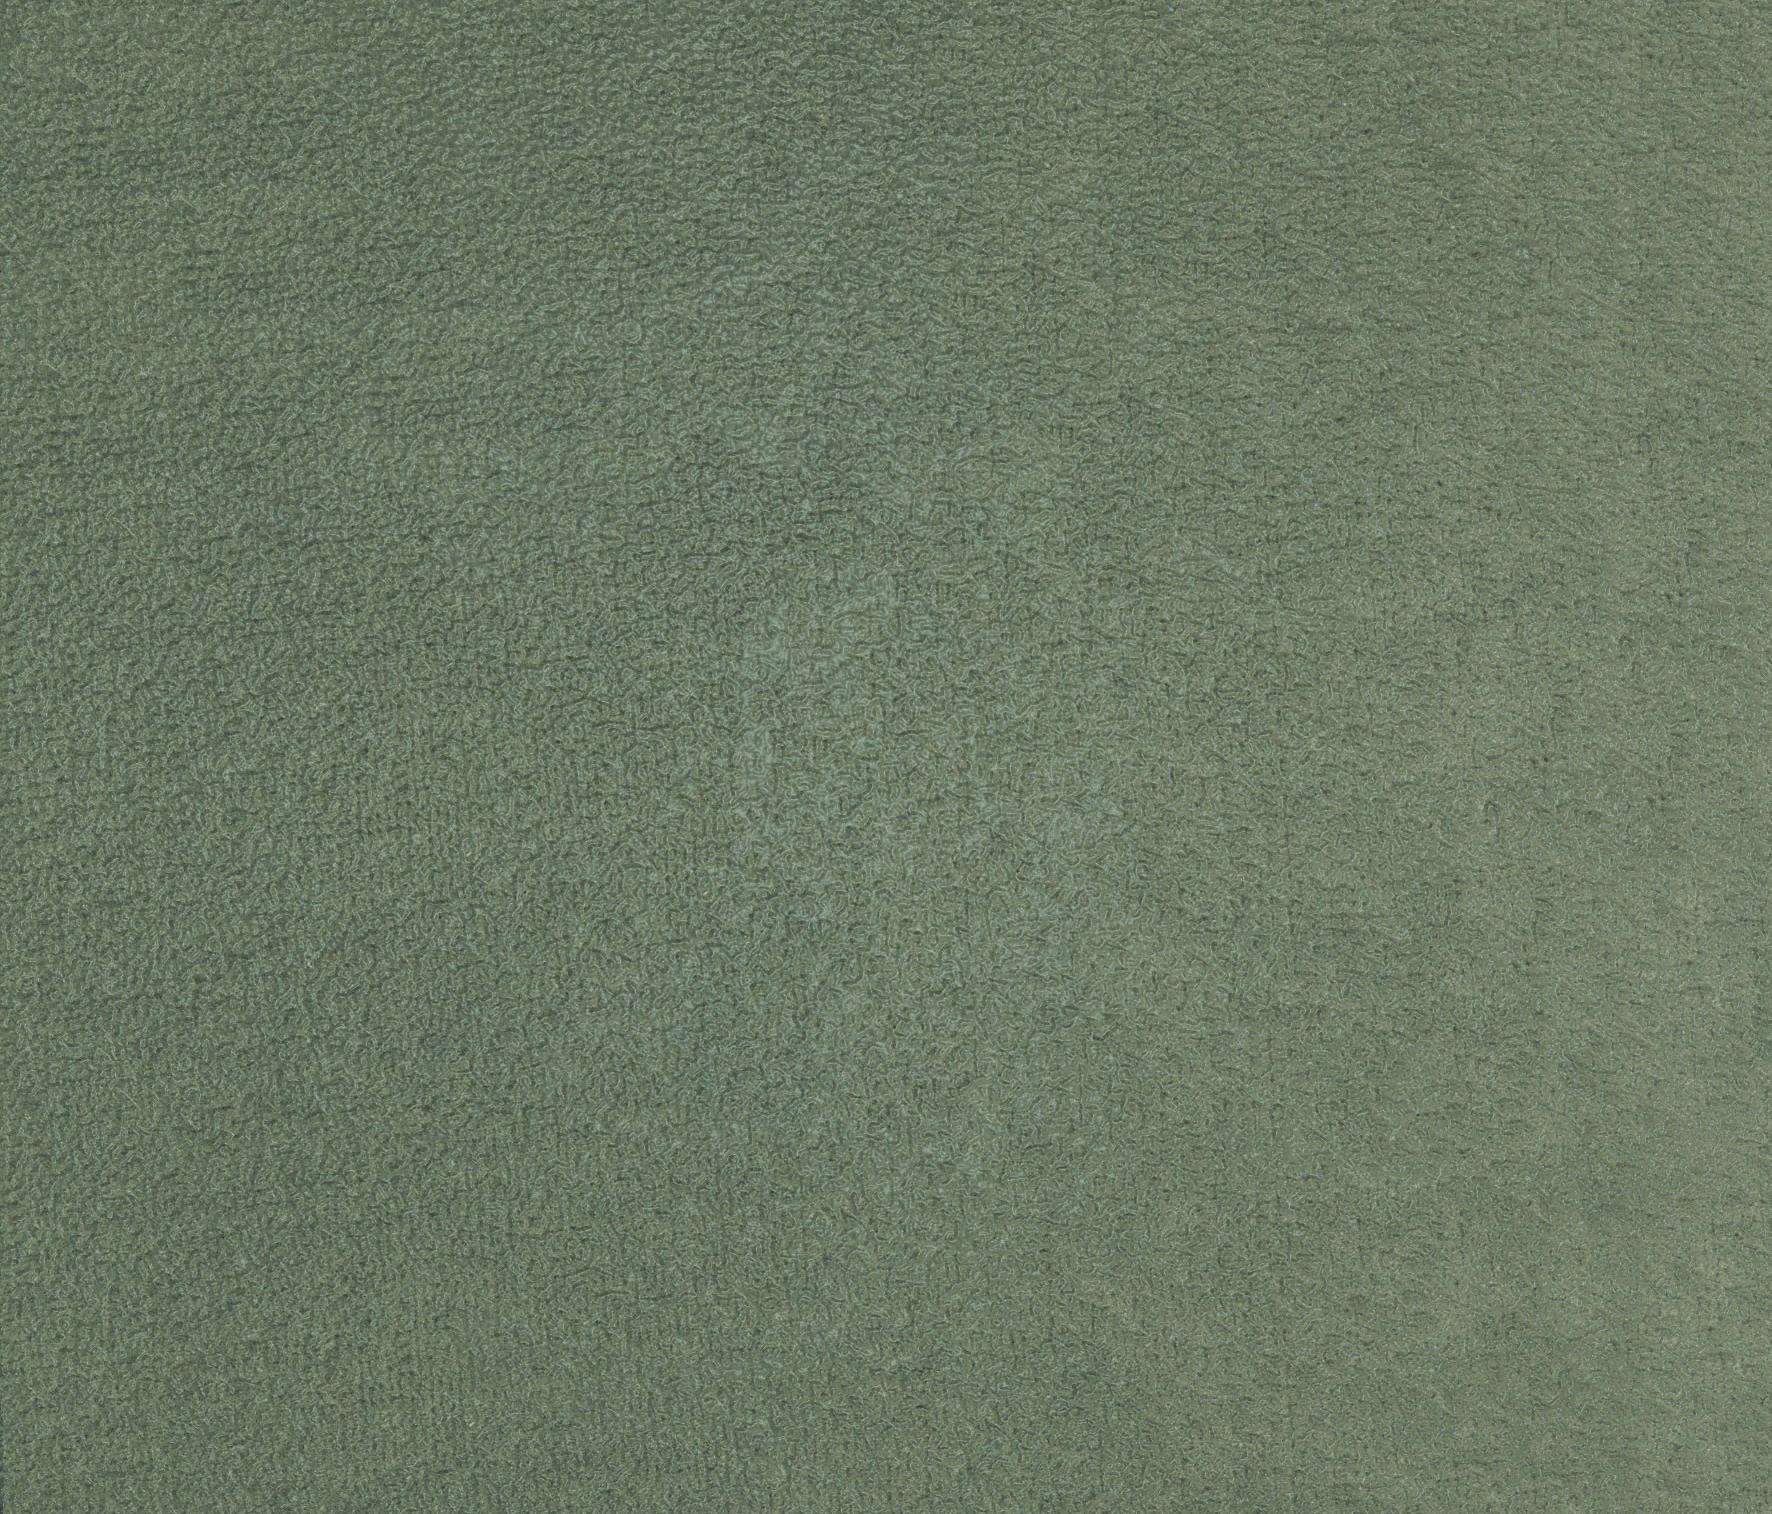 TSAR LB 691 67 - Drapery fabrics from Elitis | Architonic